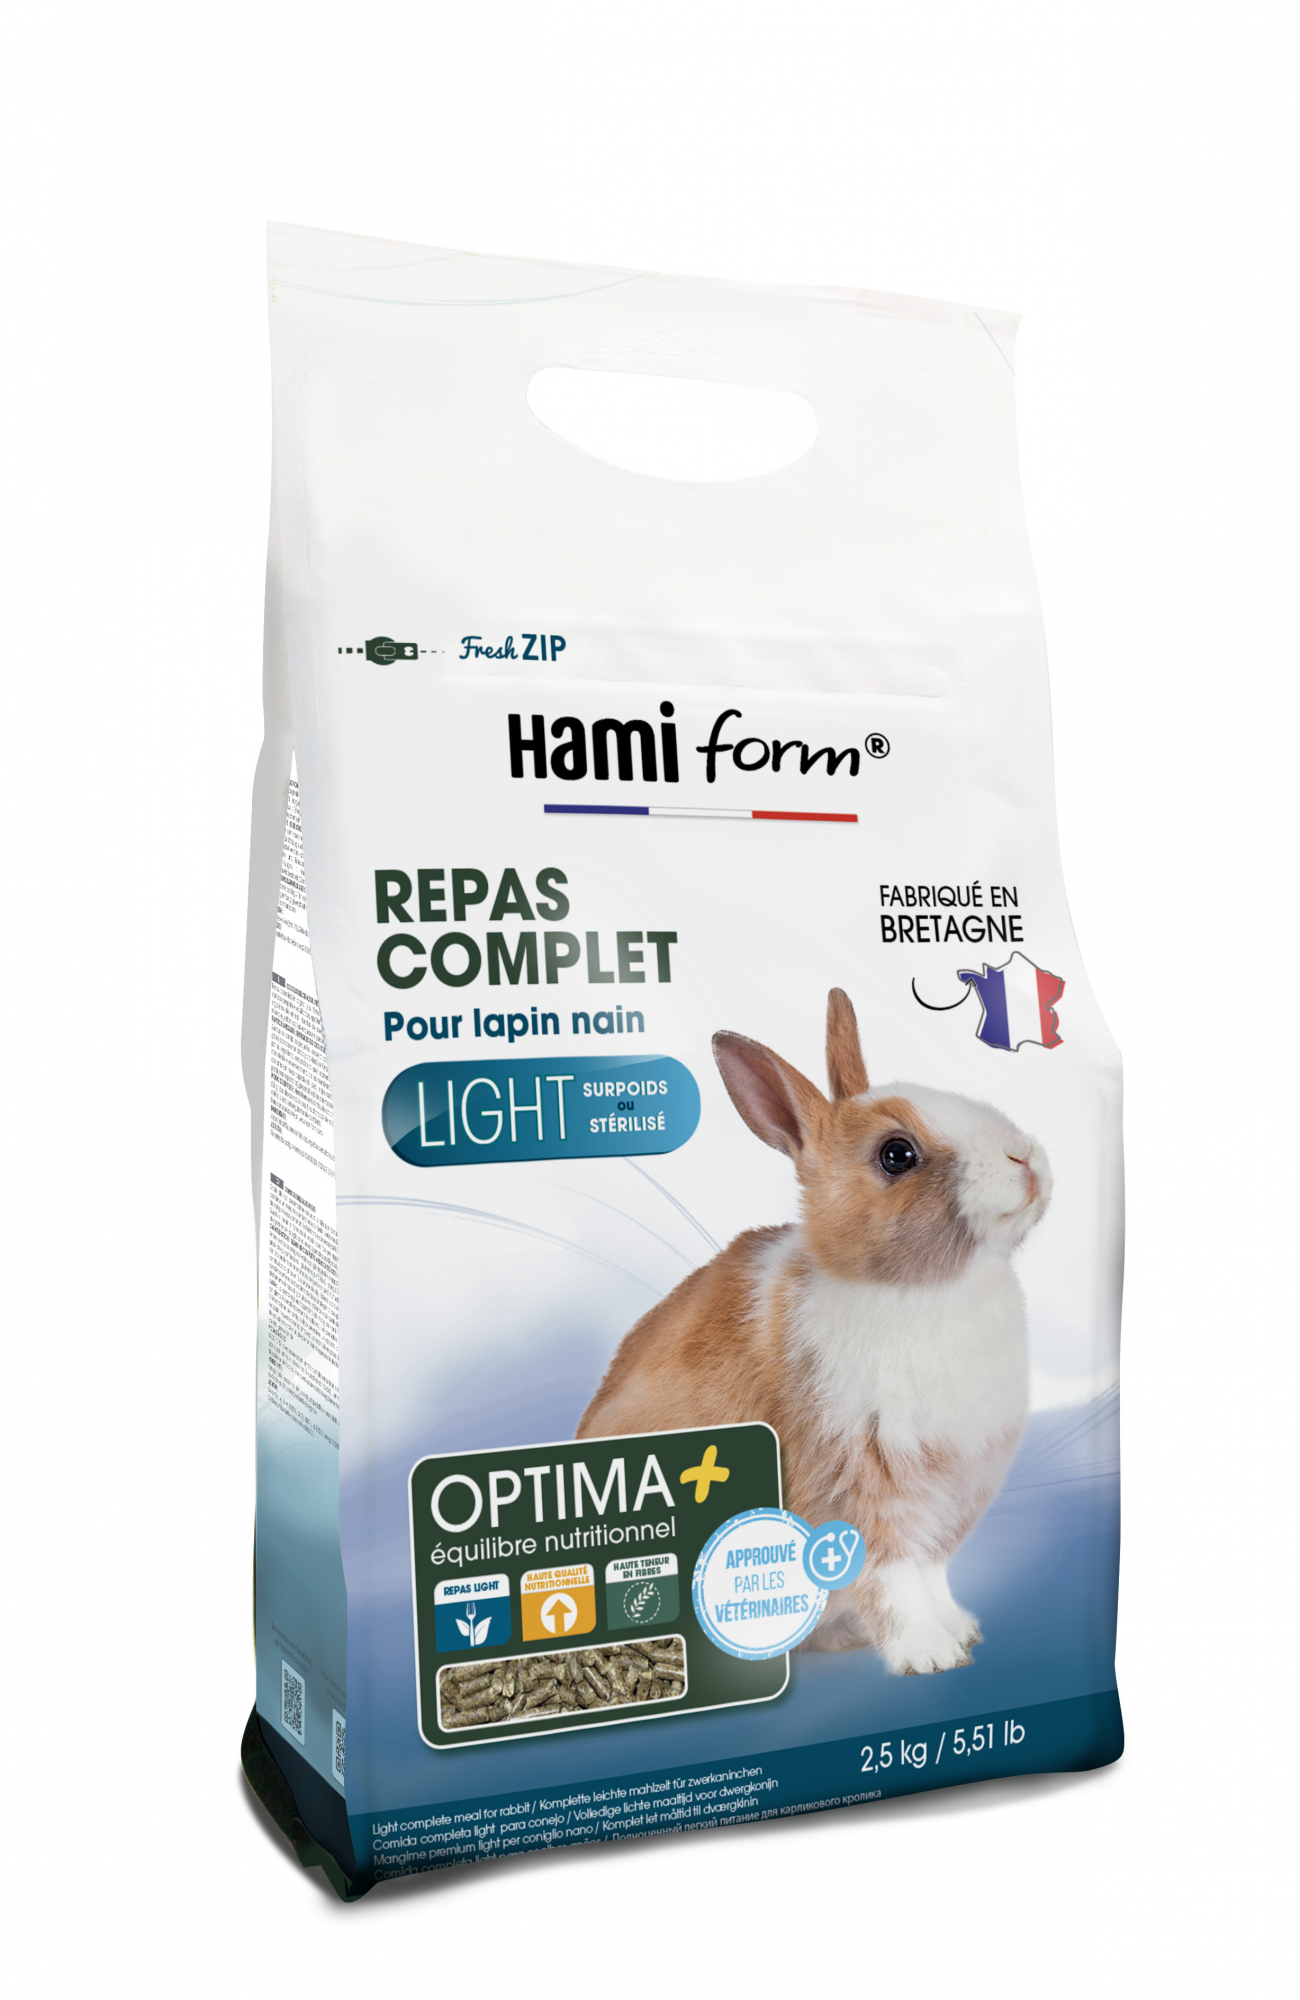 Hamiform Pienso light para conejos enanos